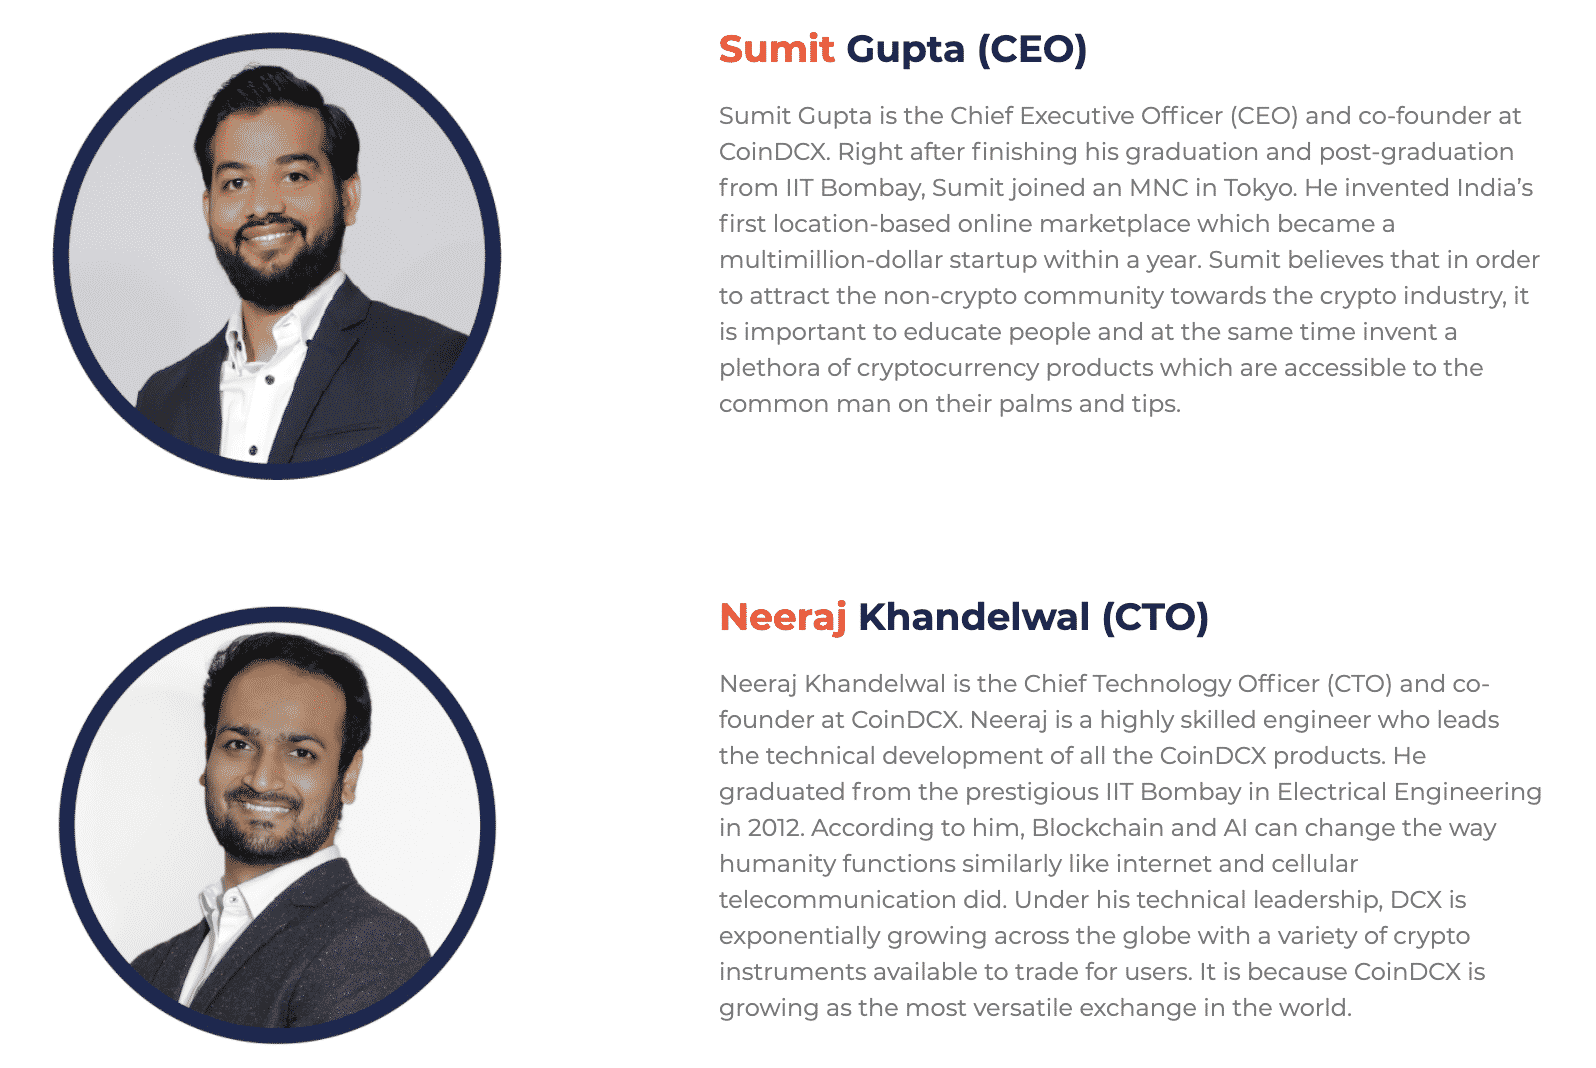 Las biografías del sitio para los fundadores de CoinDCX, Sumit Gupta y Neeraj Khandelwal, cortesía de CoinDCX